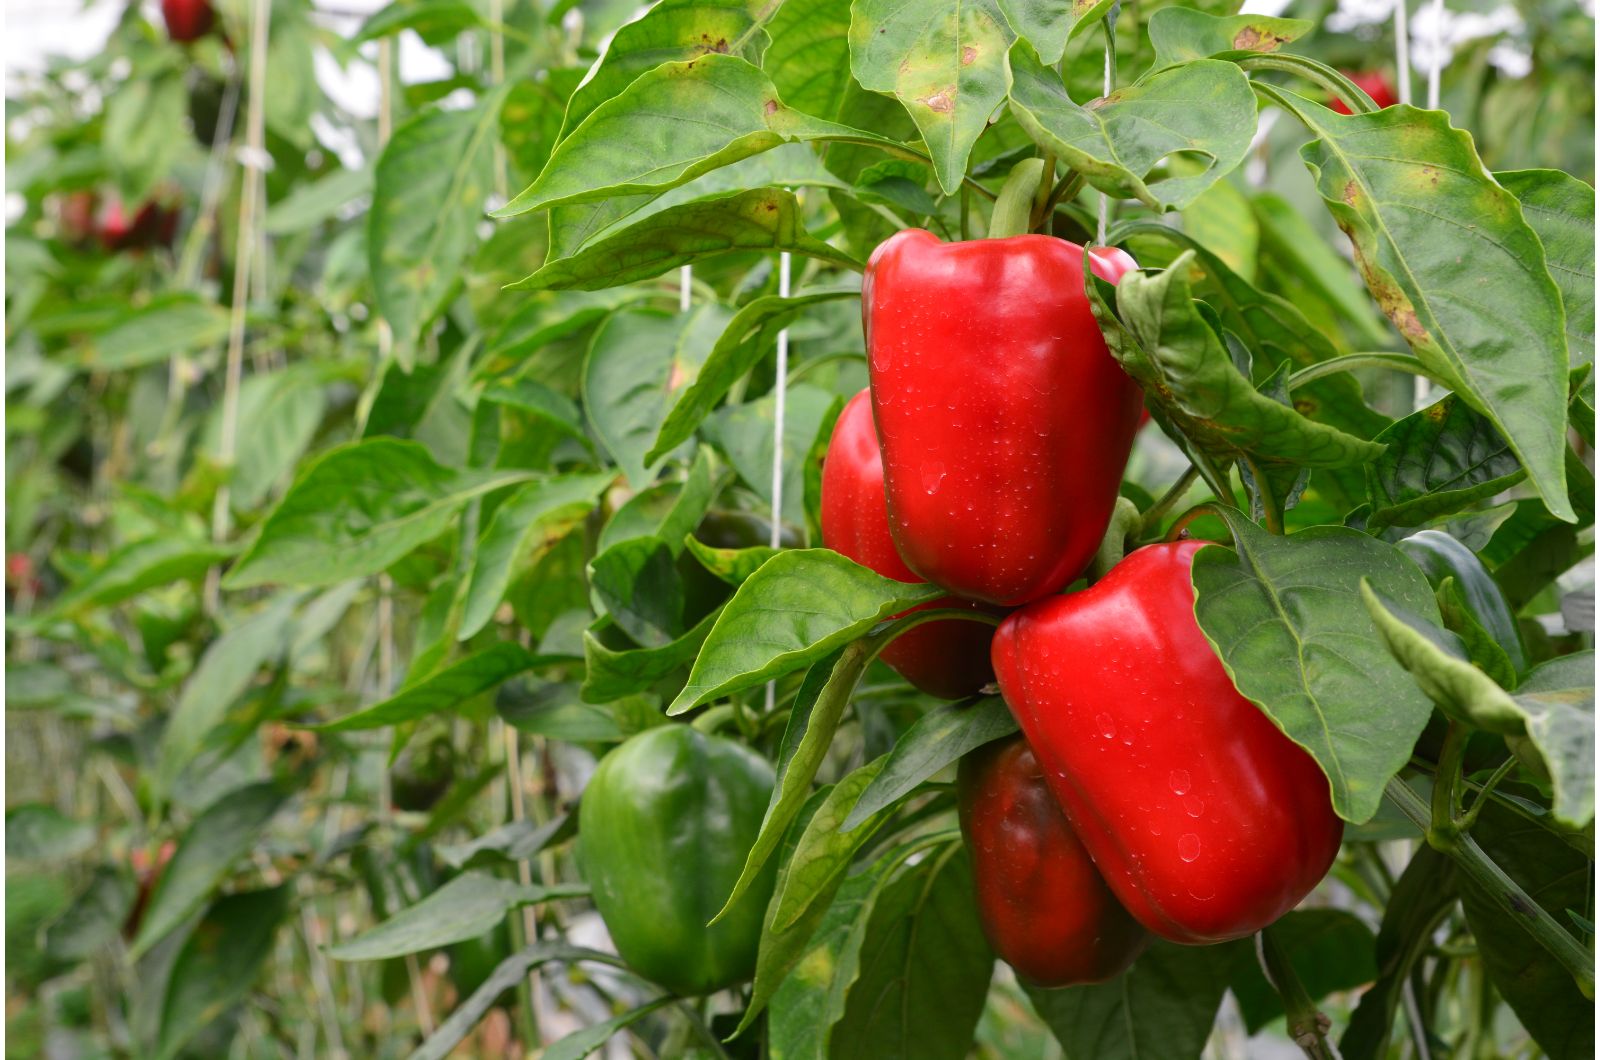 red bell peppers growing in garden